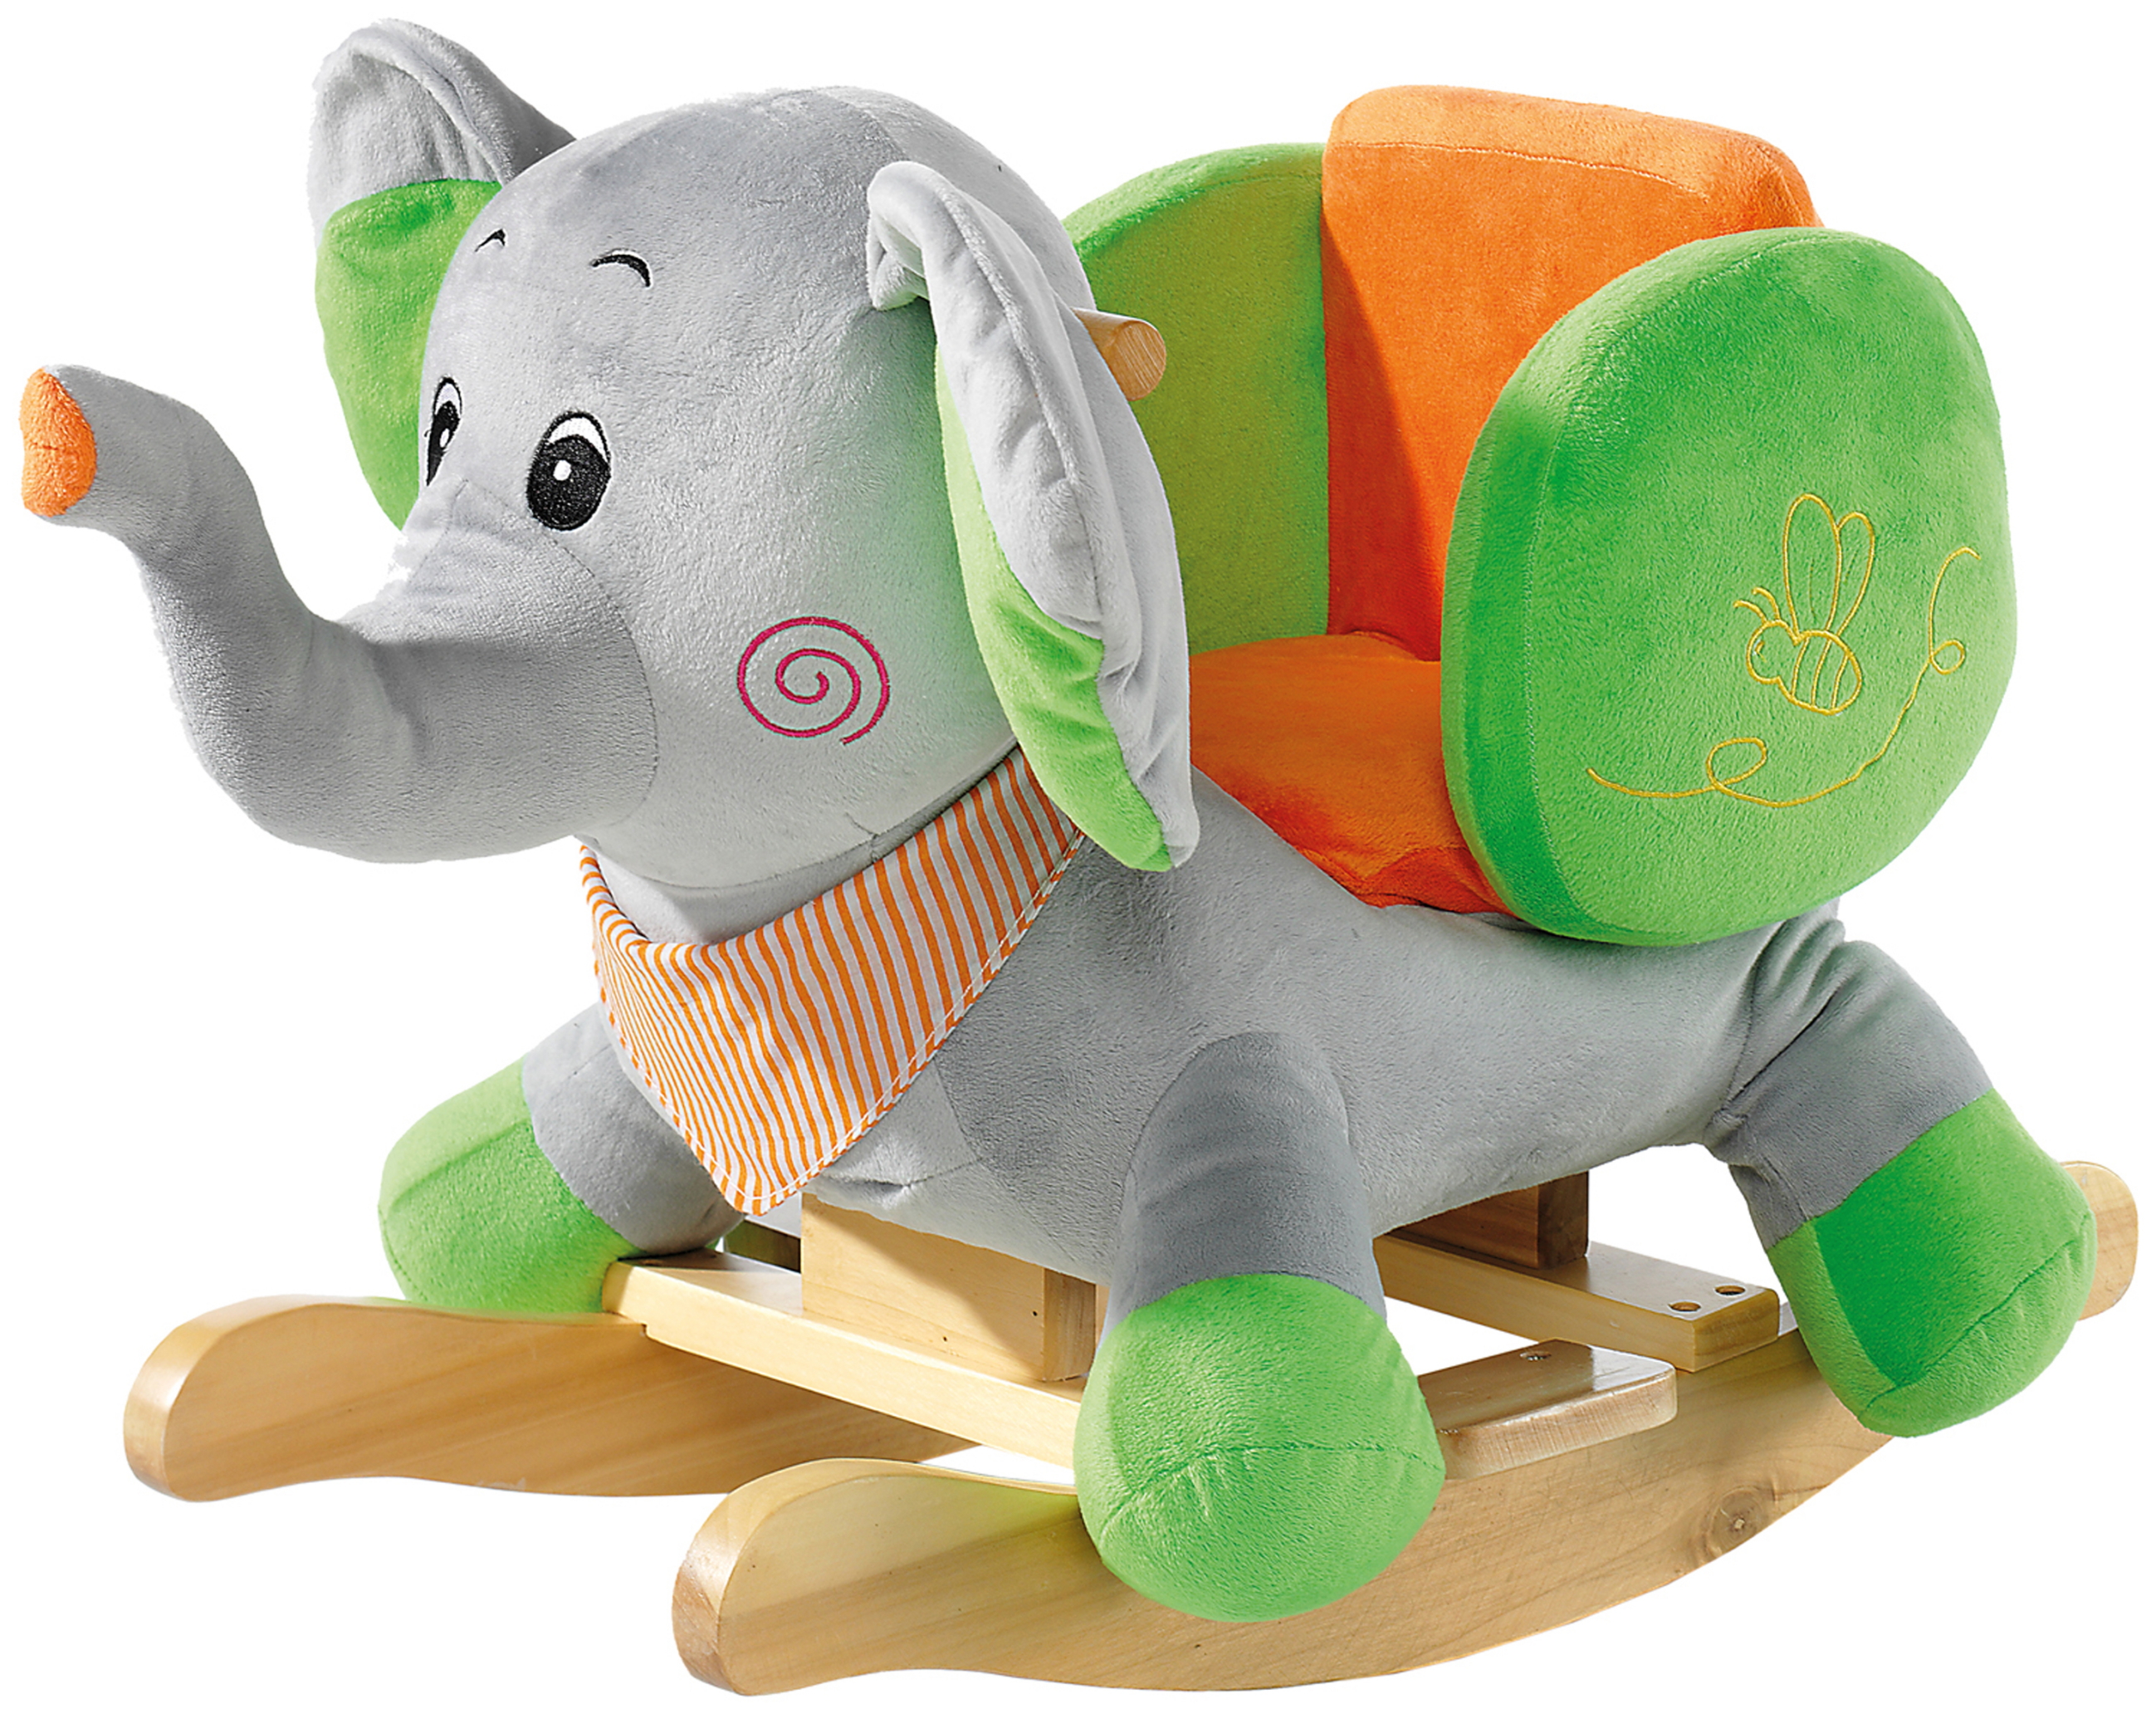 Heunec Schaukeltier Elefant in grau mit grünen Füßen und grün / orangem Sitz